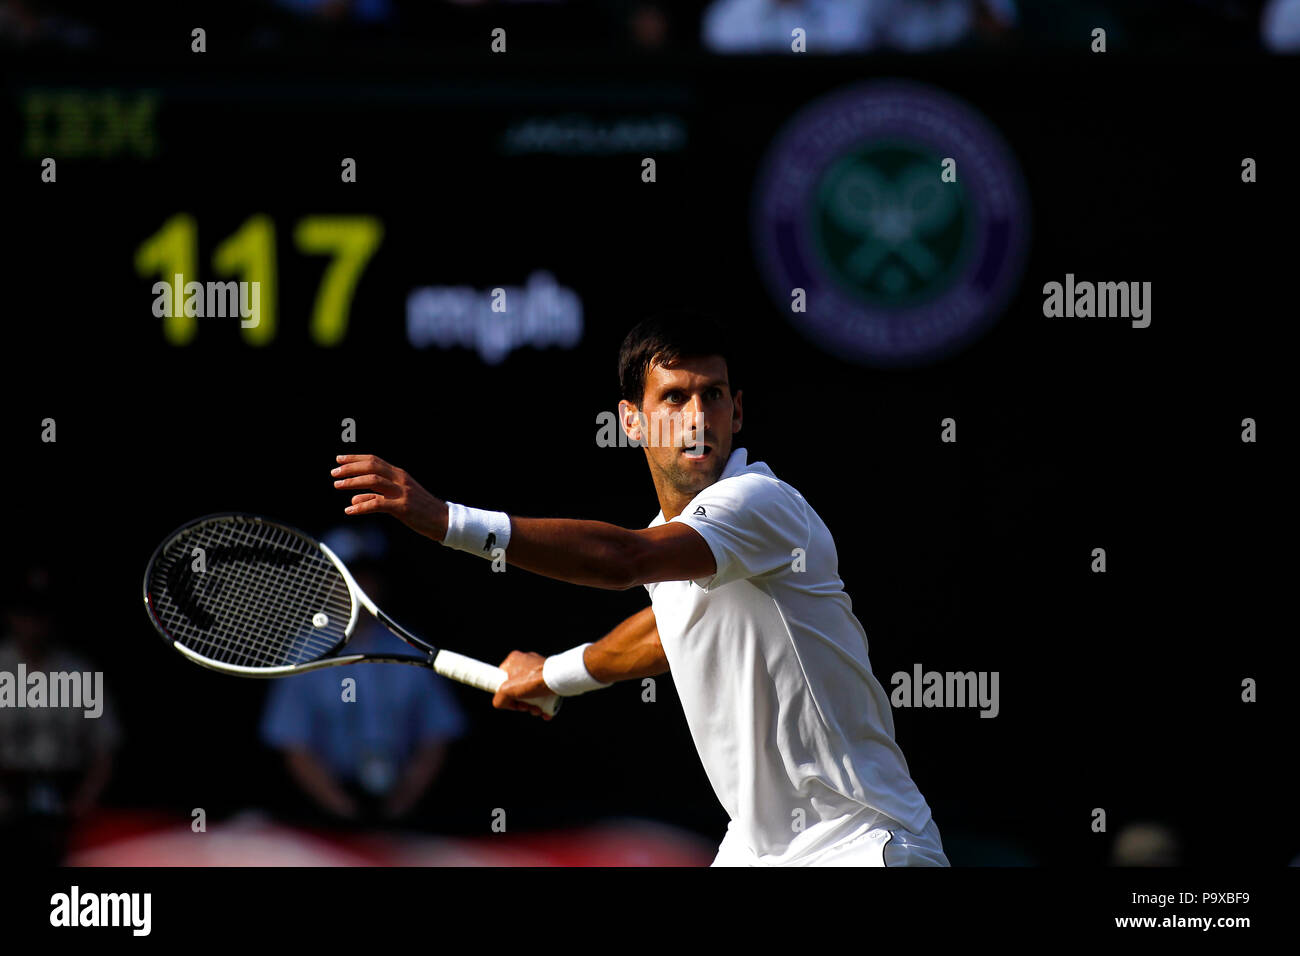 Londres, Angleterre - le 7 juillet 2018. Wimbledon Tennis : Novak Djokovic lors de son troisième match contre la Grande-Bretagne's Kyle Edmund sur le Court Central de Wimbledon aujourd'hui. Banque D'Images